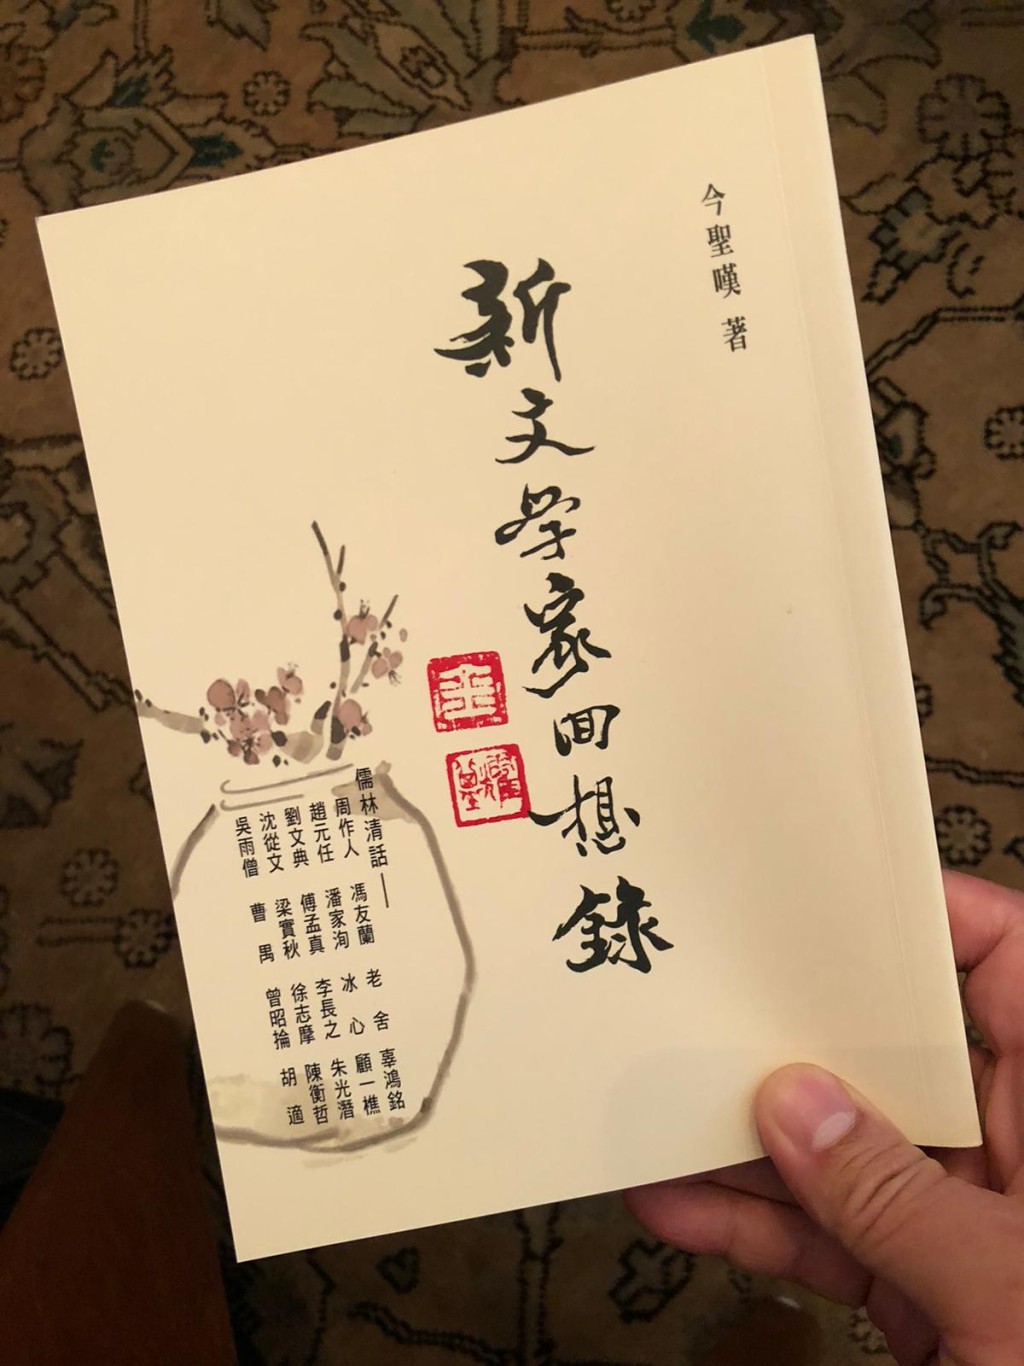 程鼎一近日重新出版父親以筆名「今聖嘆」撰寫的《新文學家回想錄——儒林清話》。資料圖片